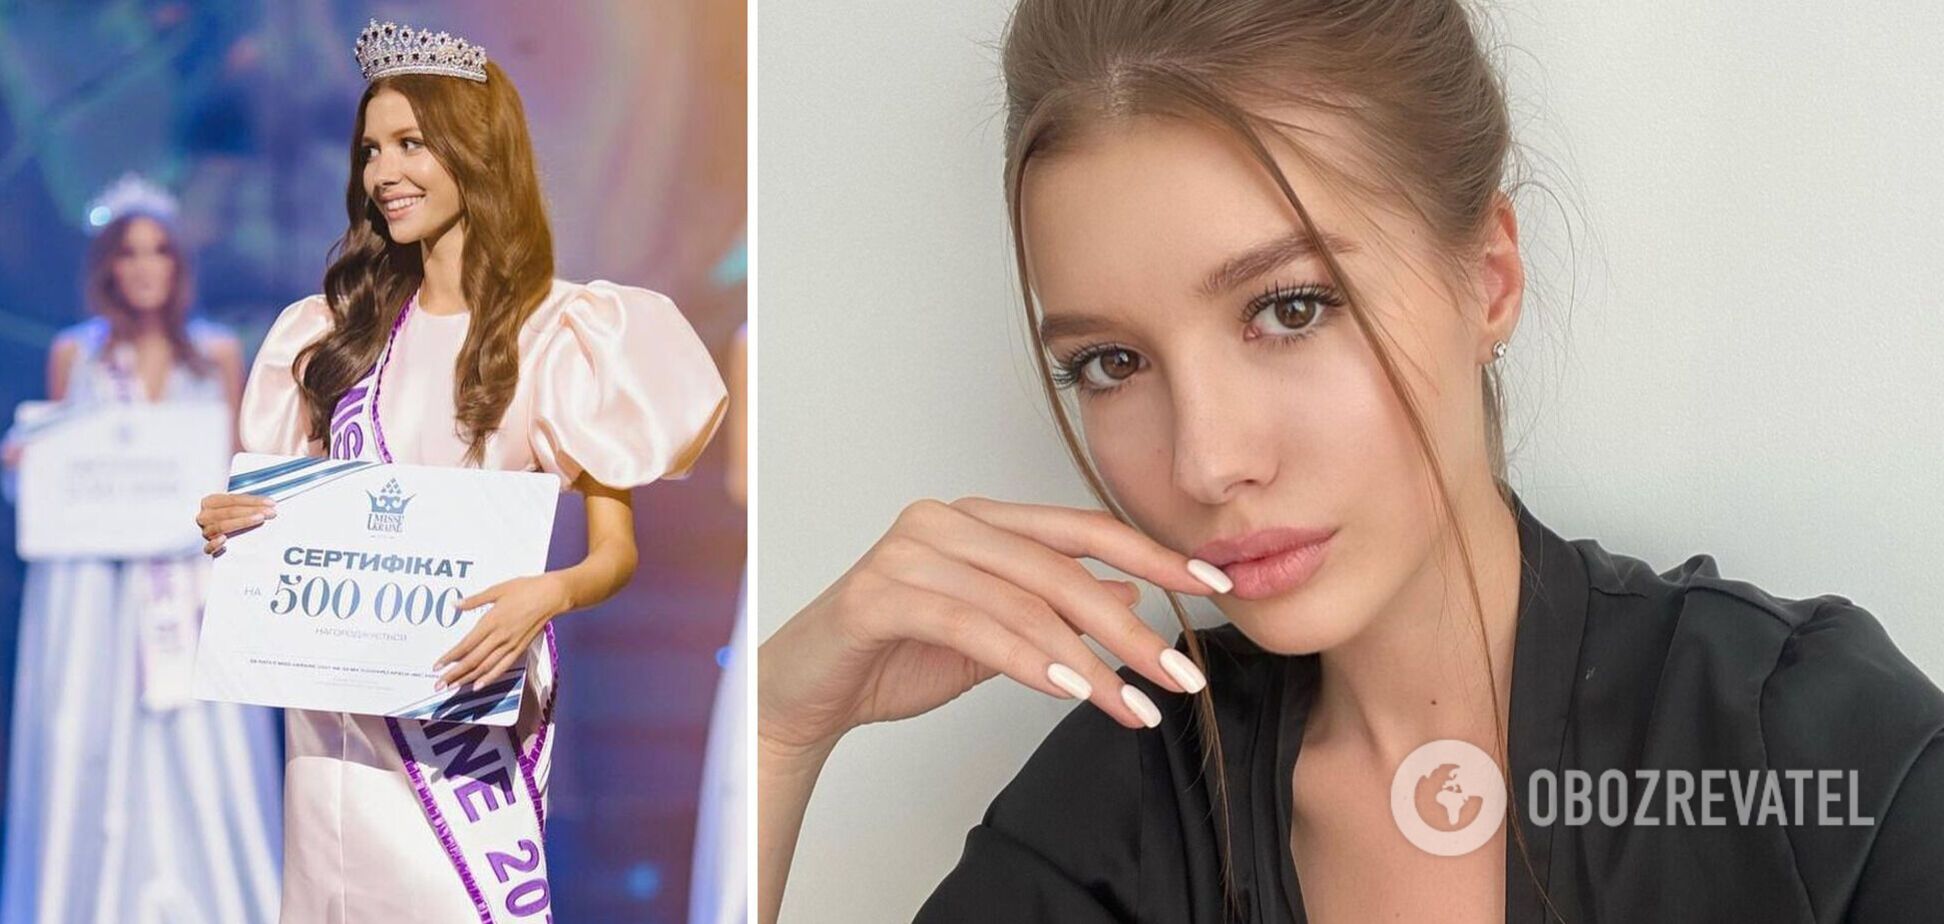 Стало известно, кто может представить Украину на 'Мисс мира' вместо Александры Яремчук. Фото красавицы